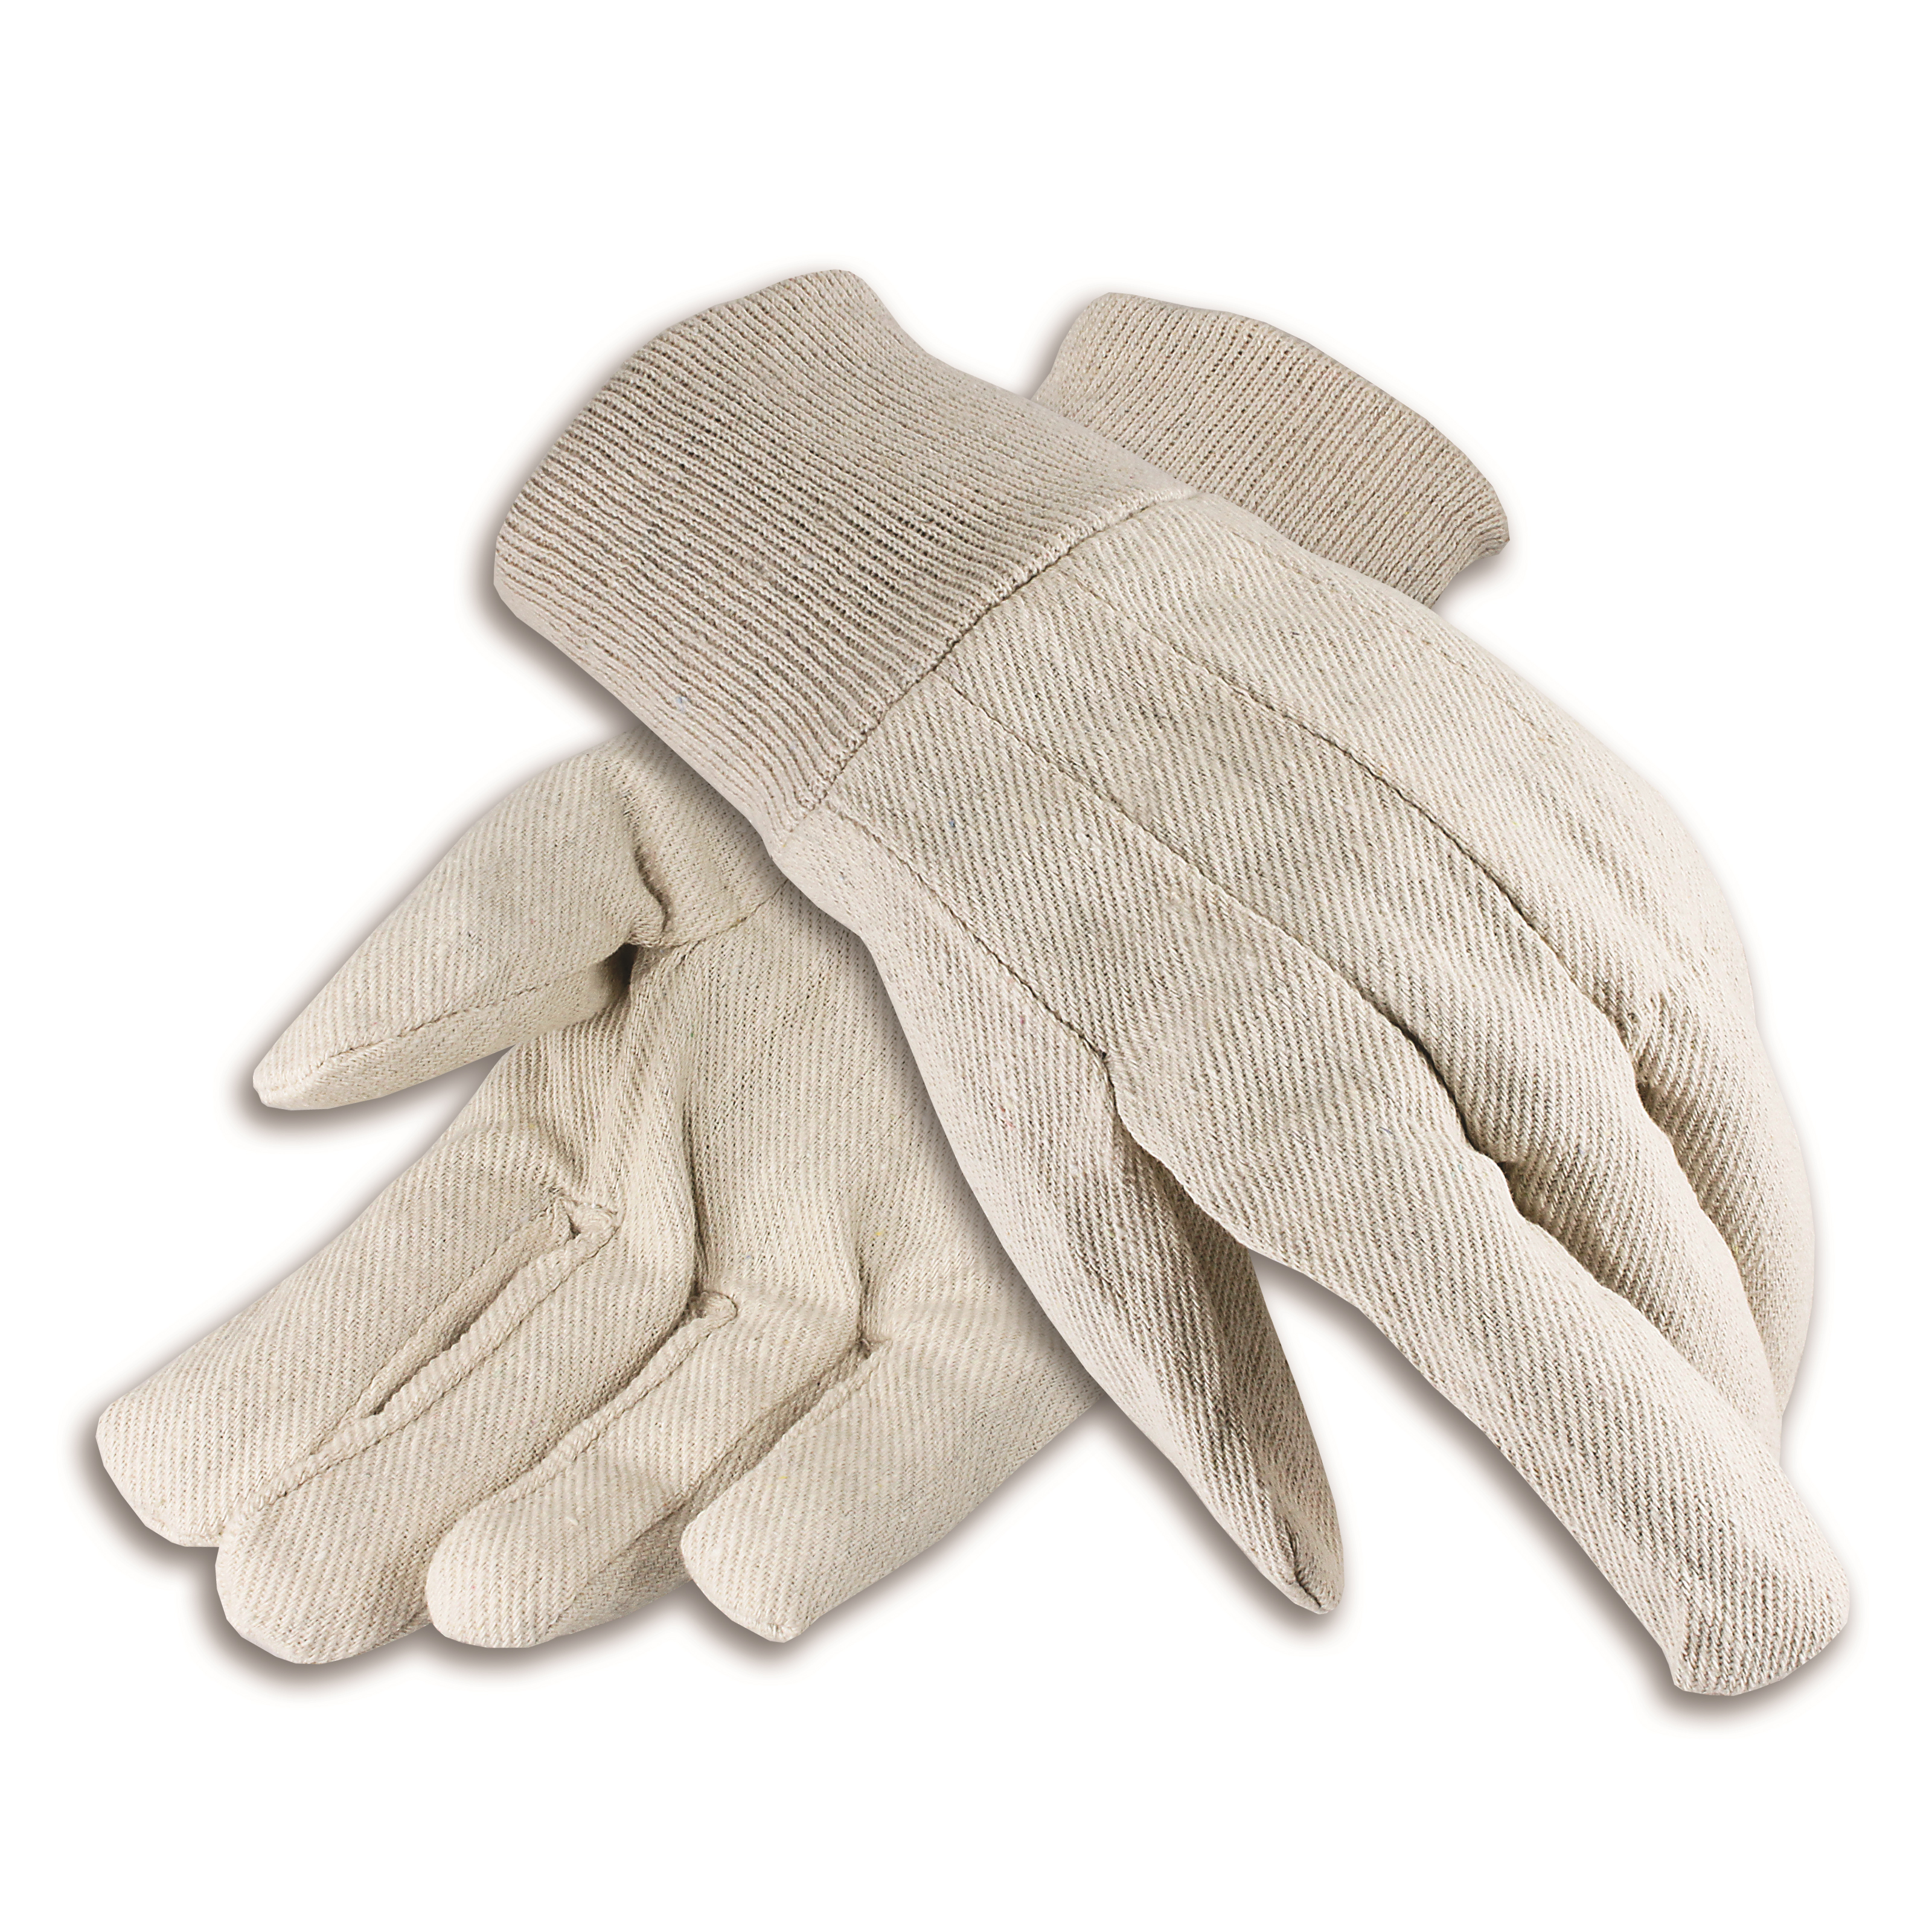 Cotton Canvas Gloves, Men's 8 oz. Knit Wrist